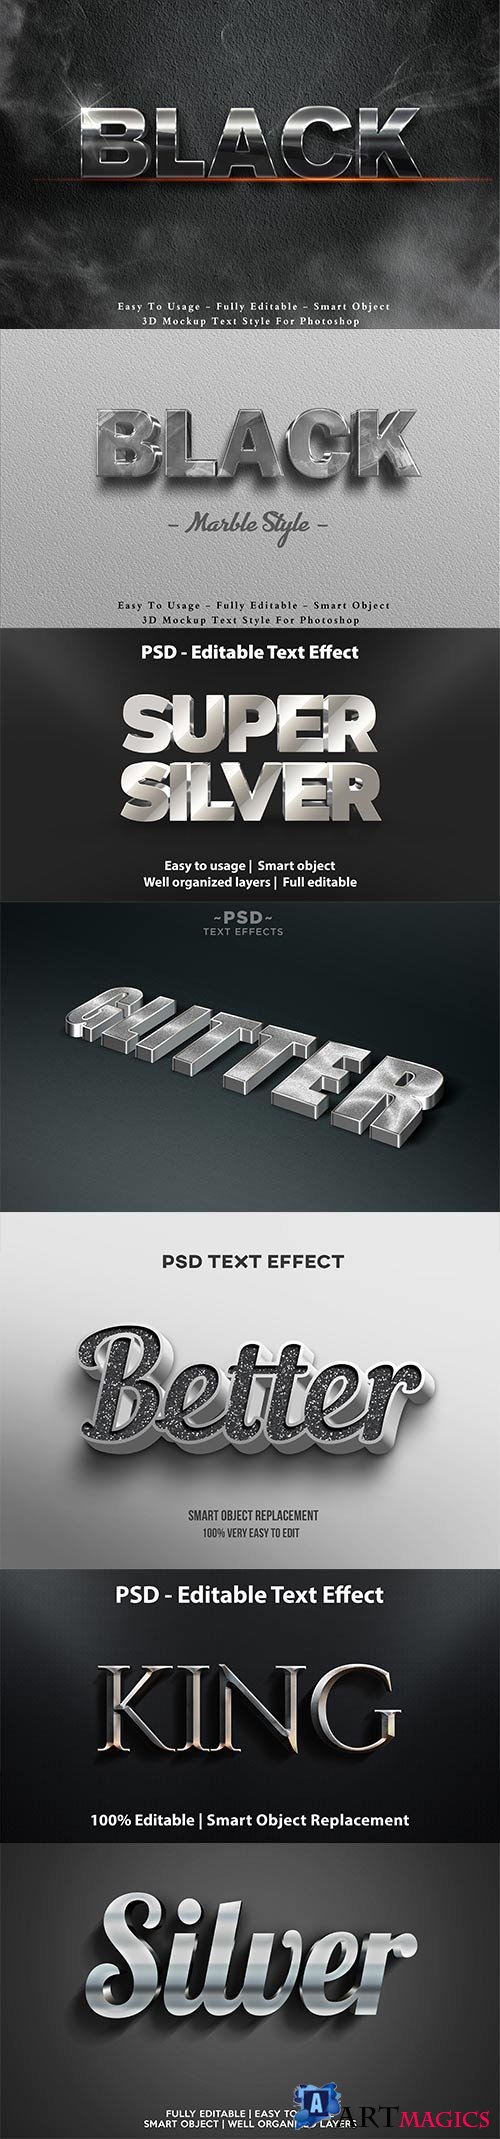 Psd text effect set vol 25